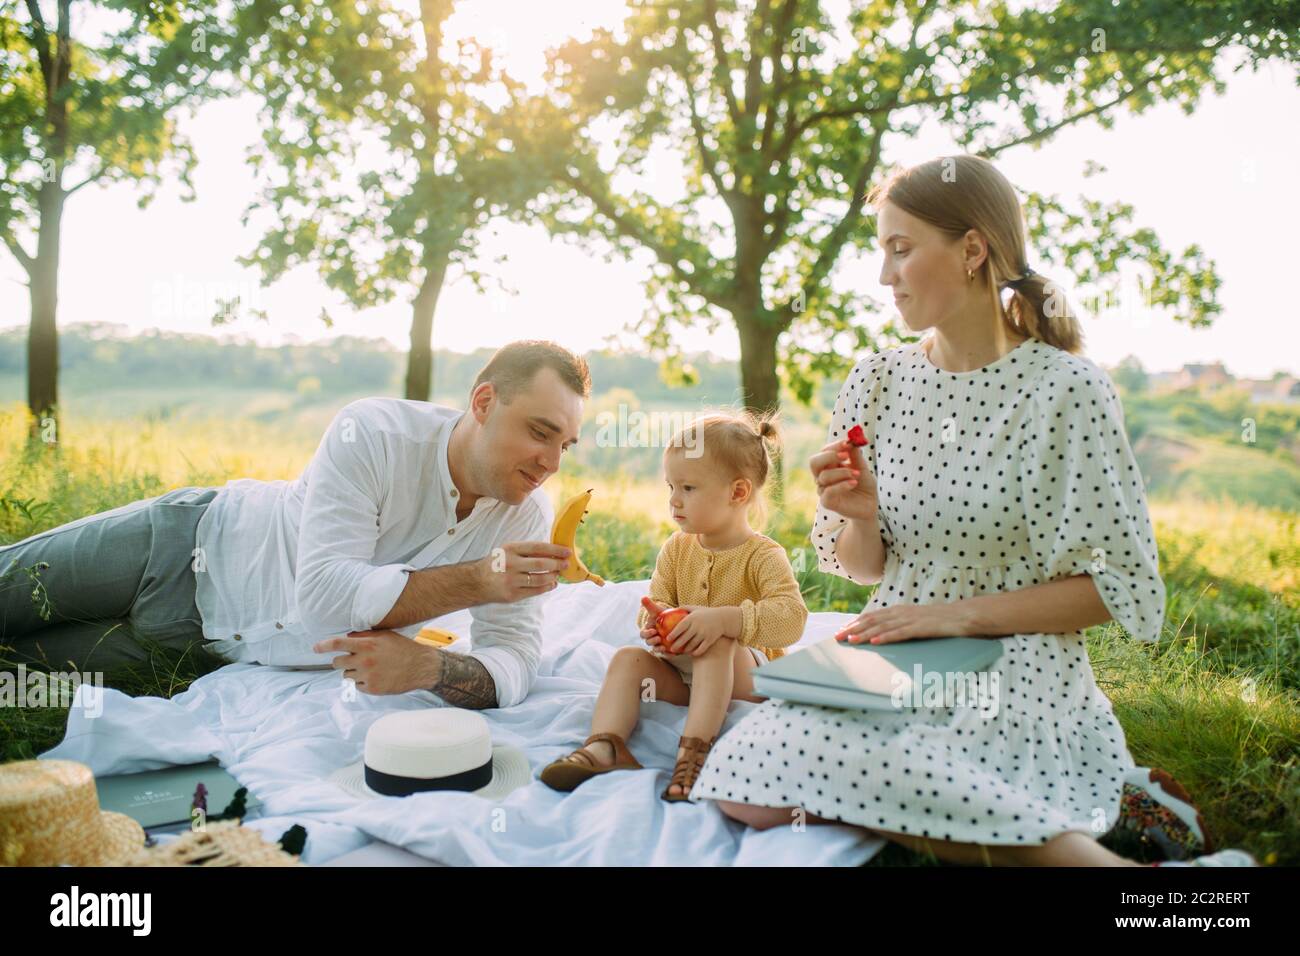 La famiglia con la figlia mangia frutta durante il picnic nel parco. Foto Stock